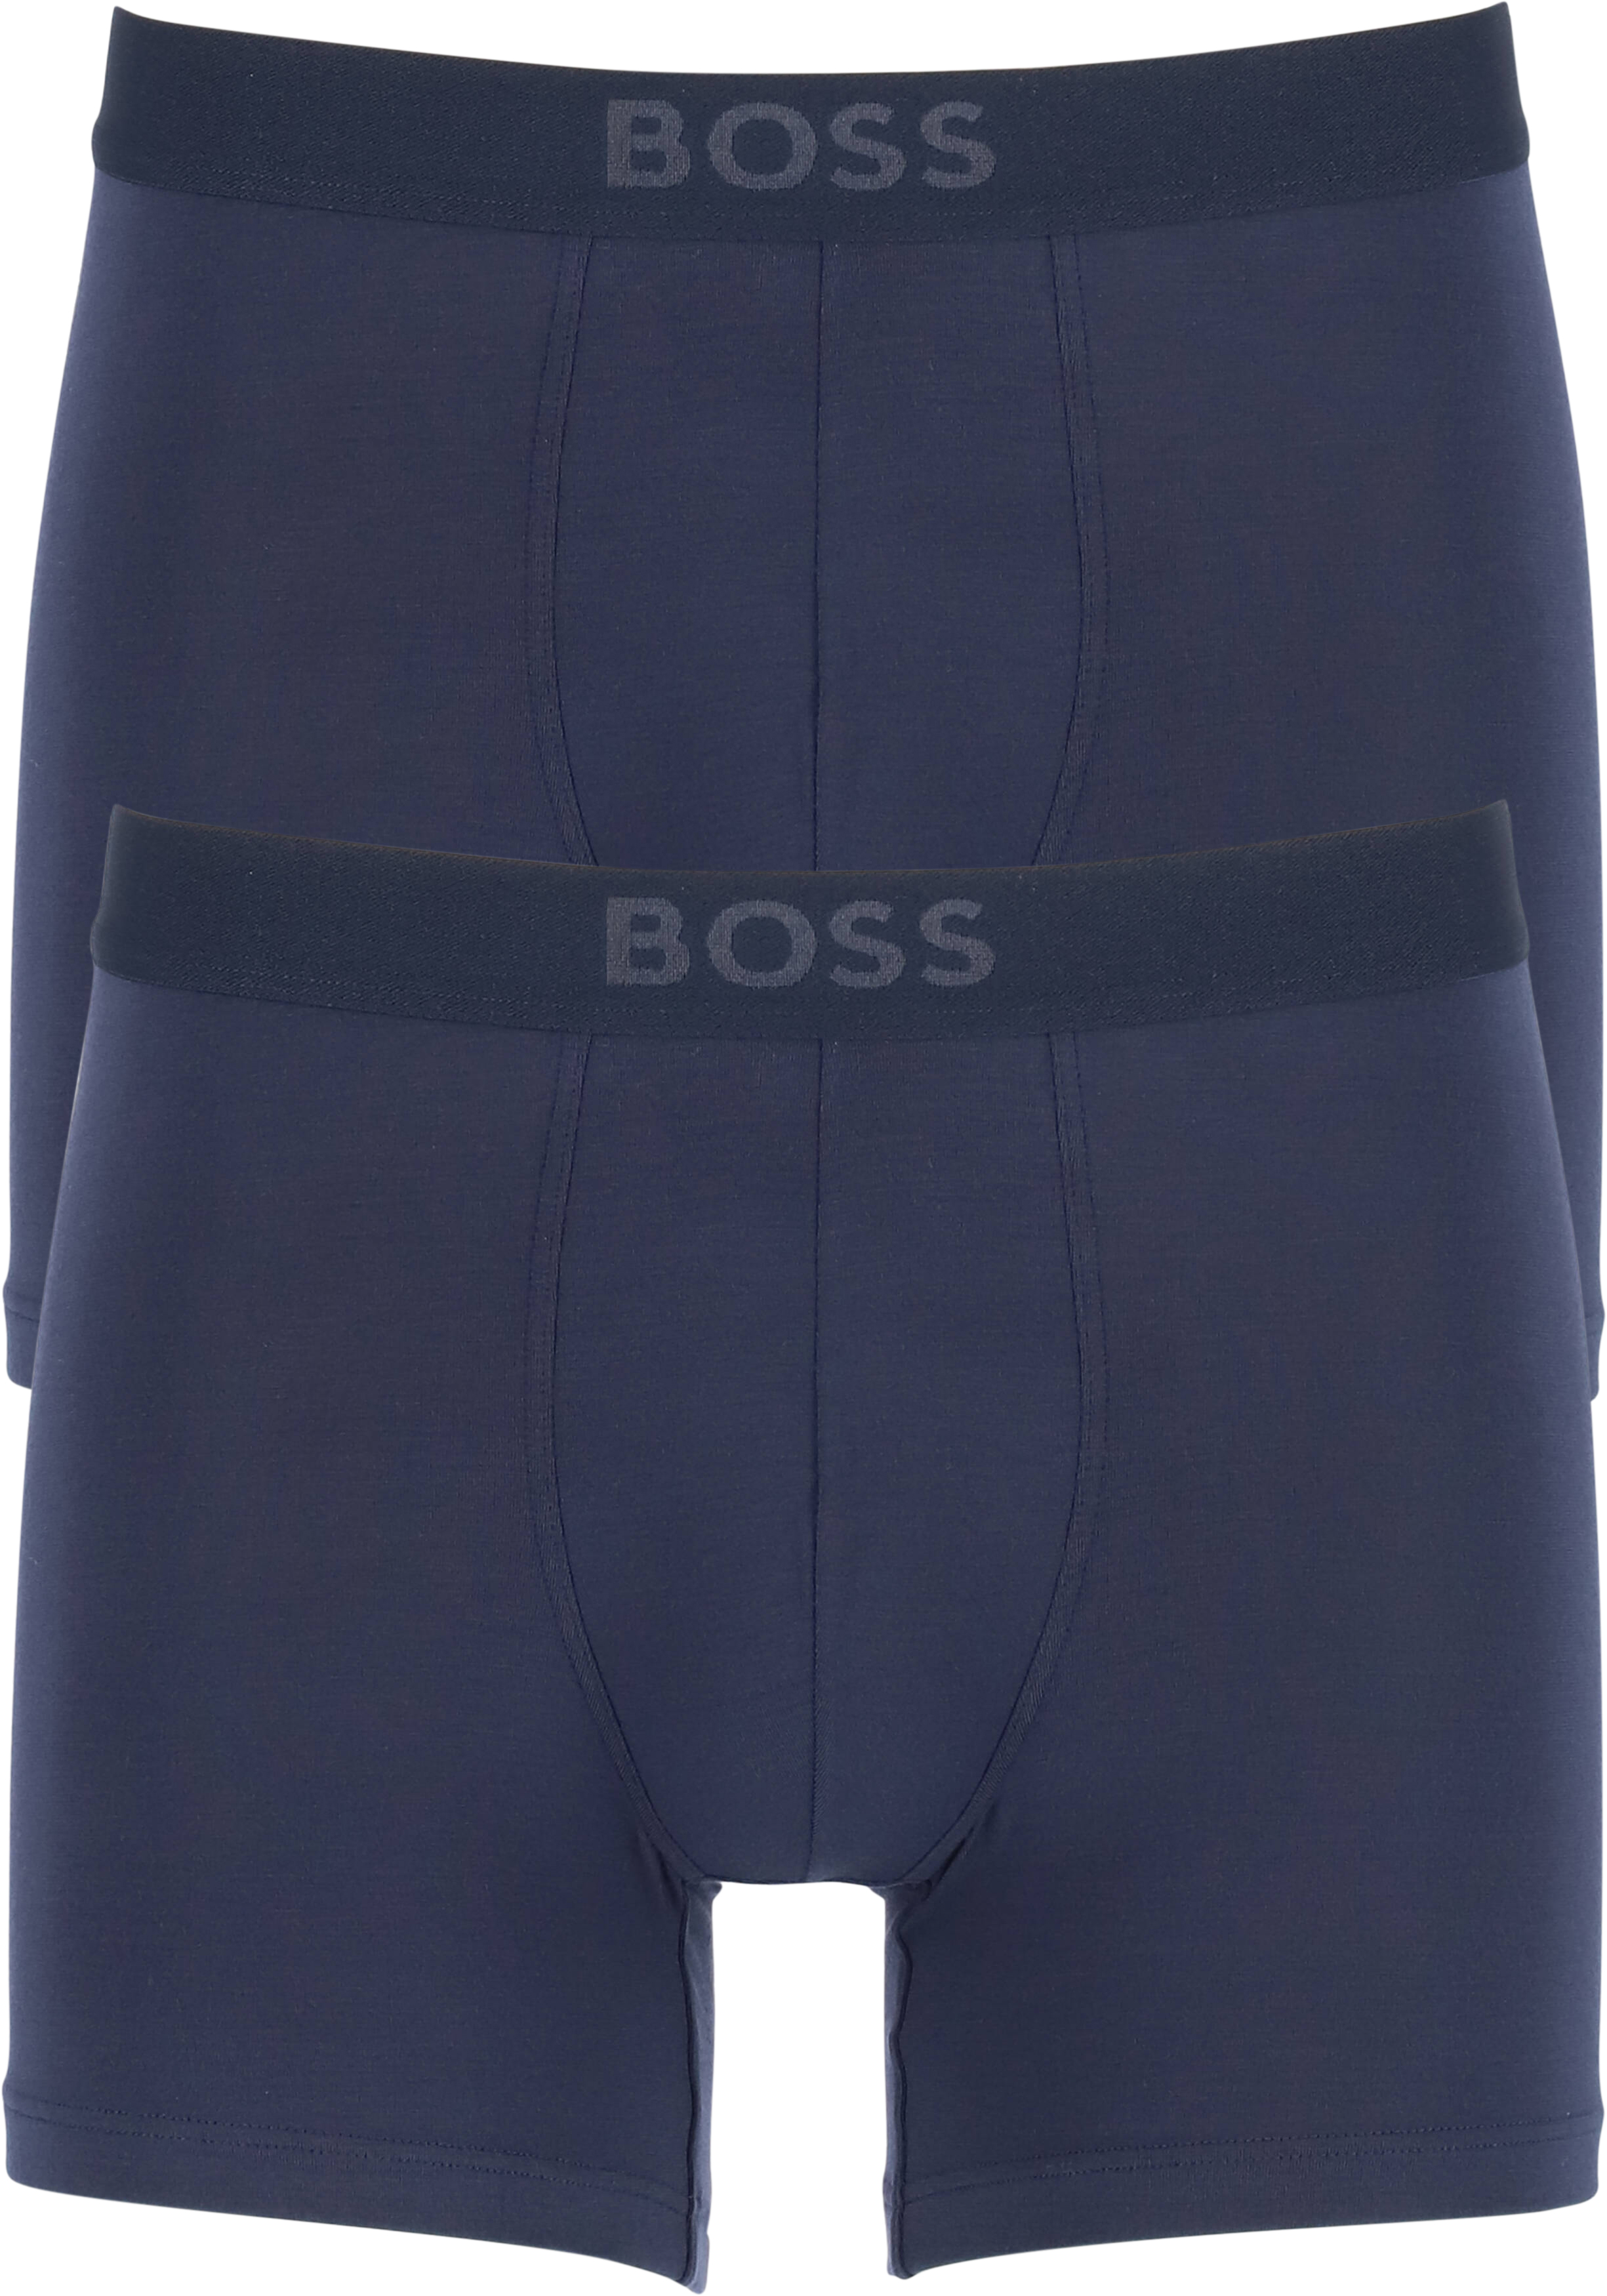 HUGO BOSS Ultrasoft boxer briefs (2-pack), heren boxers normale lengte modal, blauw